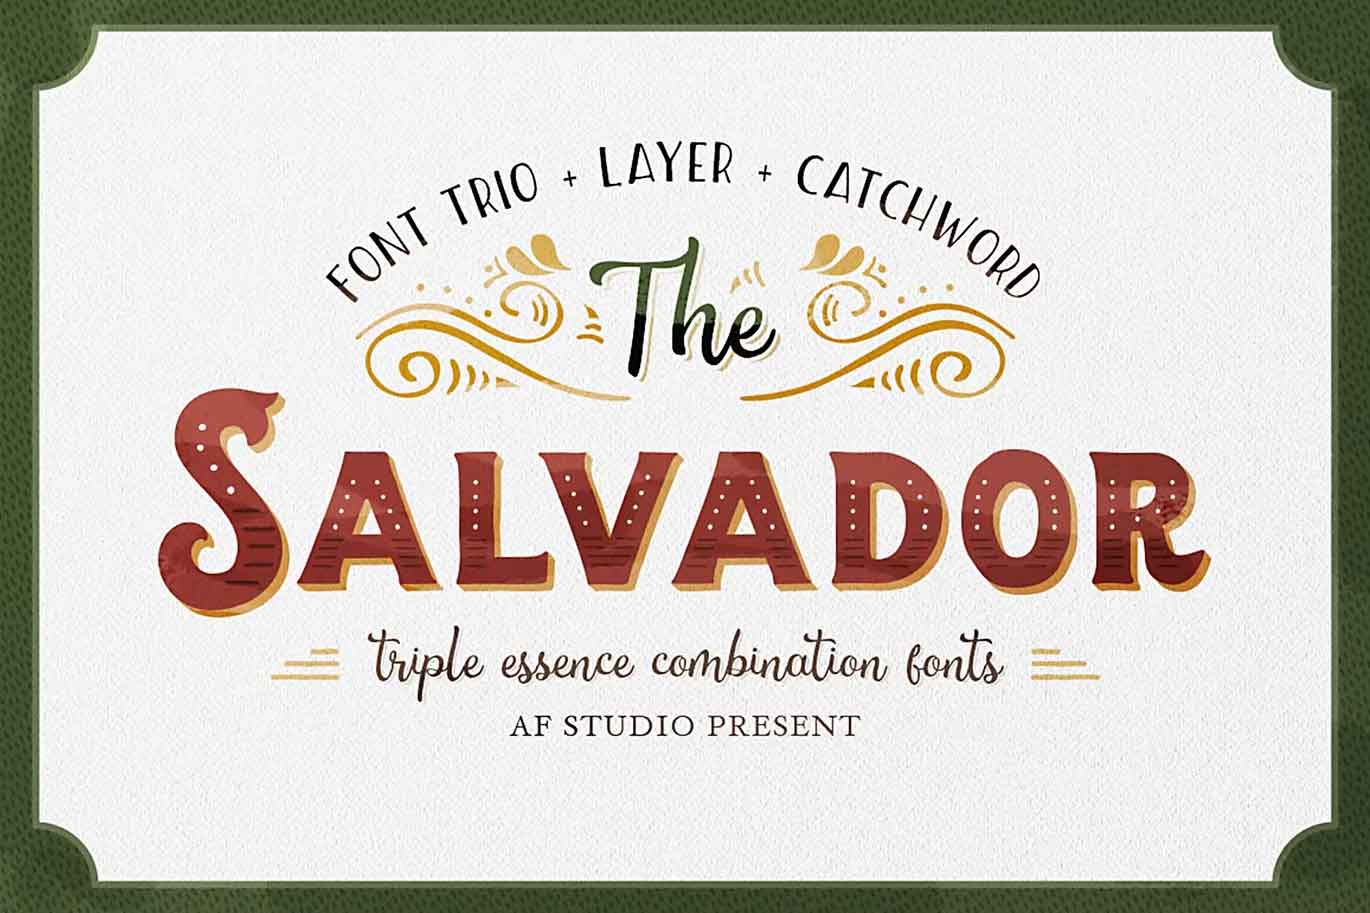 The Salvador Font